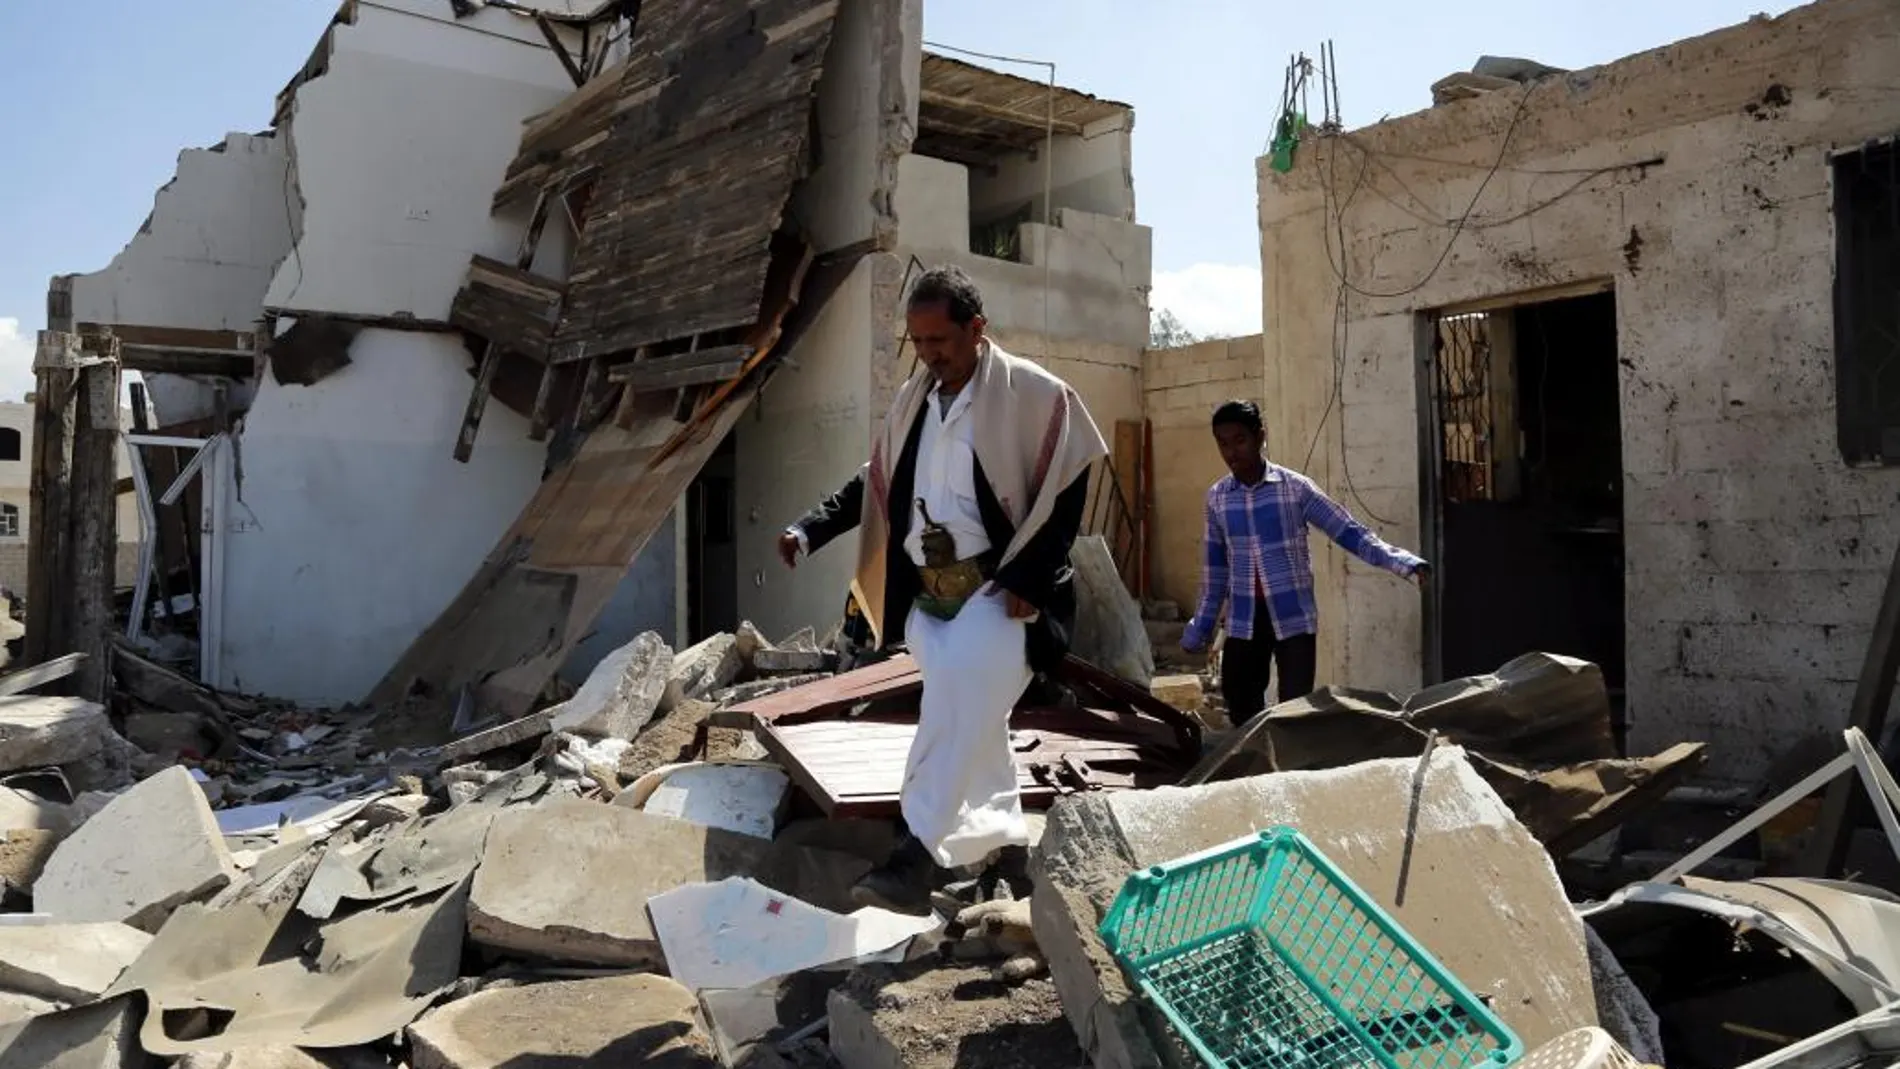 Vista de los destrozos provocados por los bombardeos de la coalición árabe liderada por Arabia Saudí en Saná, Yemen el 6 de enero de 2016